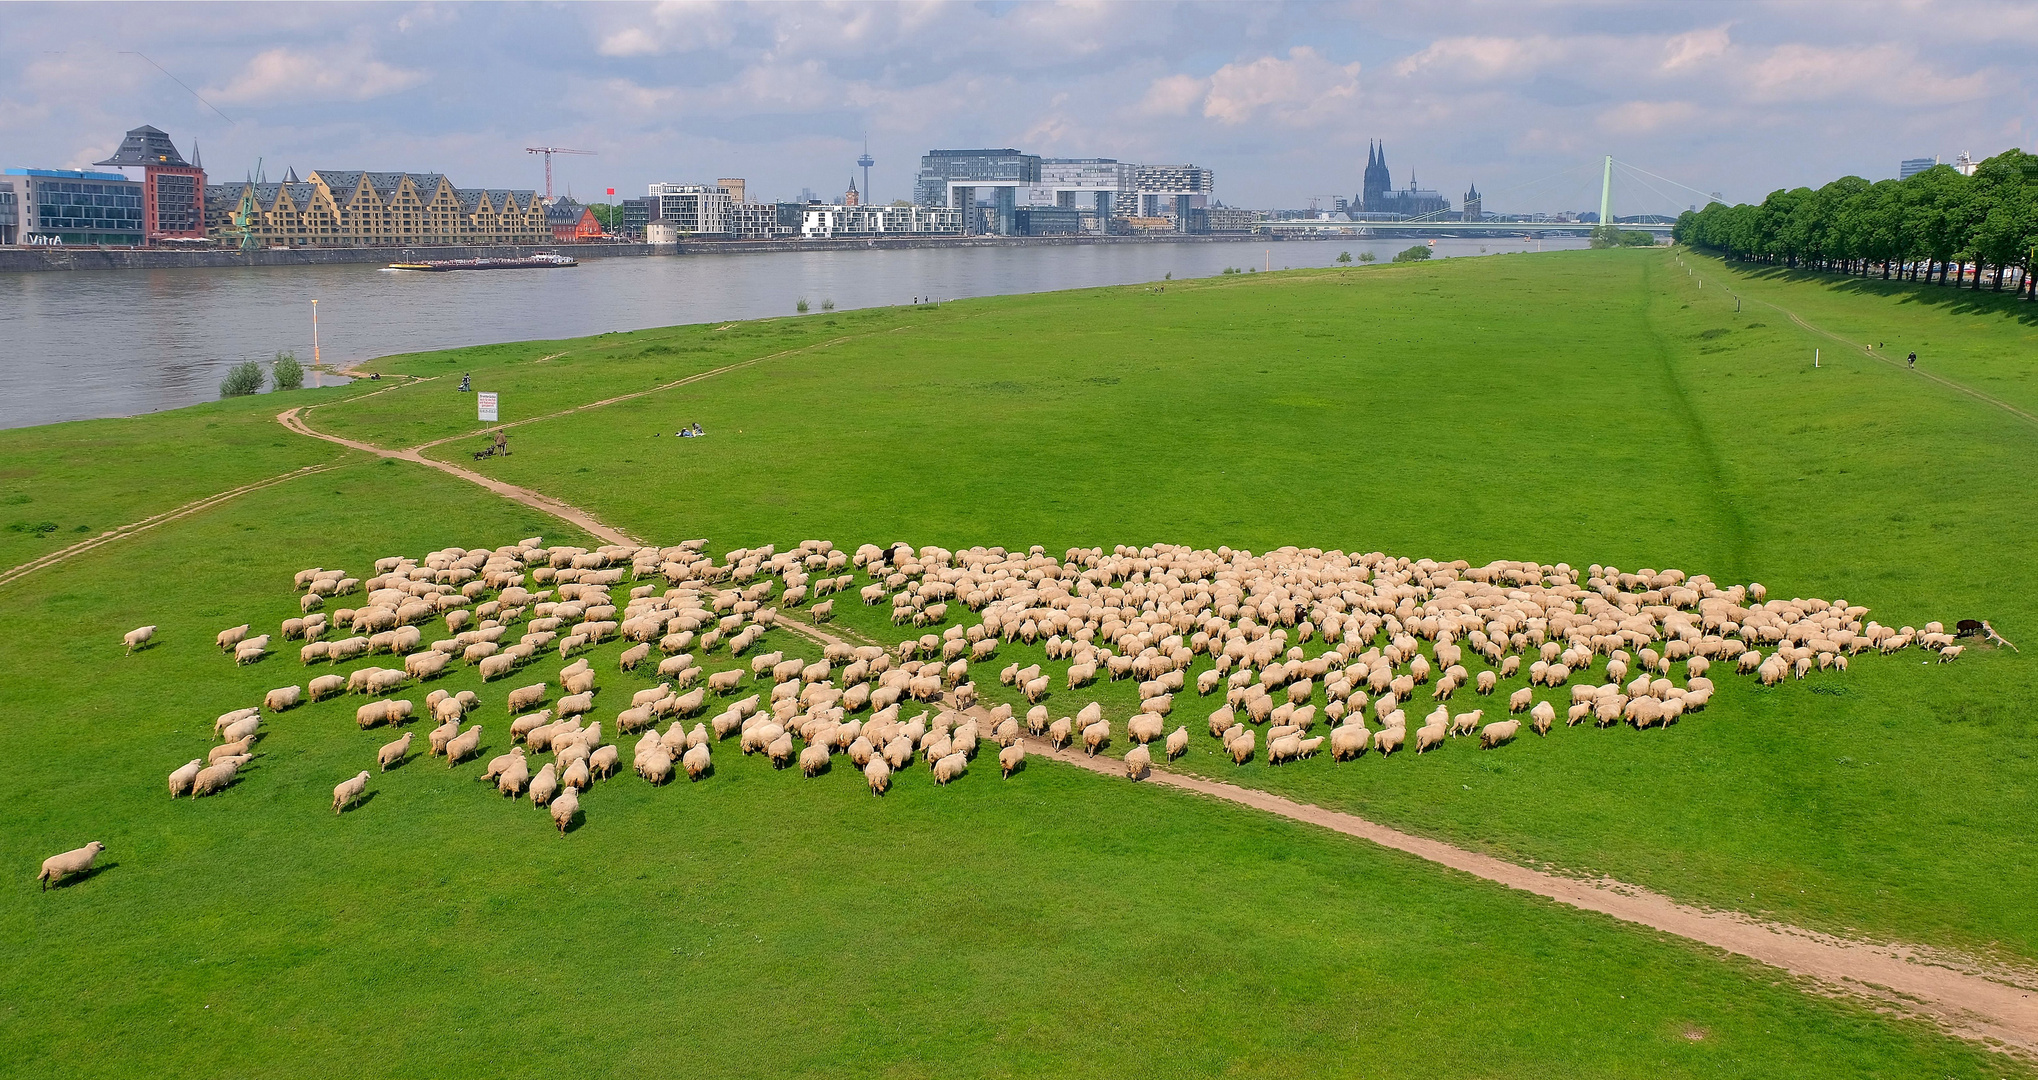 Schafe in Köln am 20.5.2021